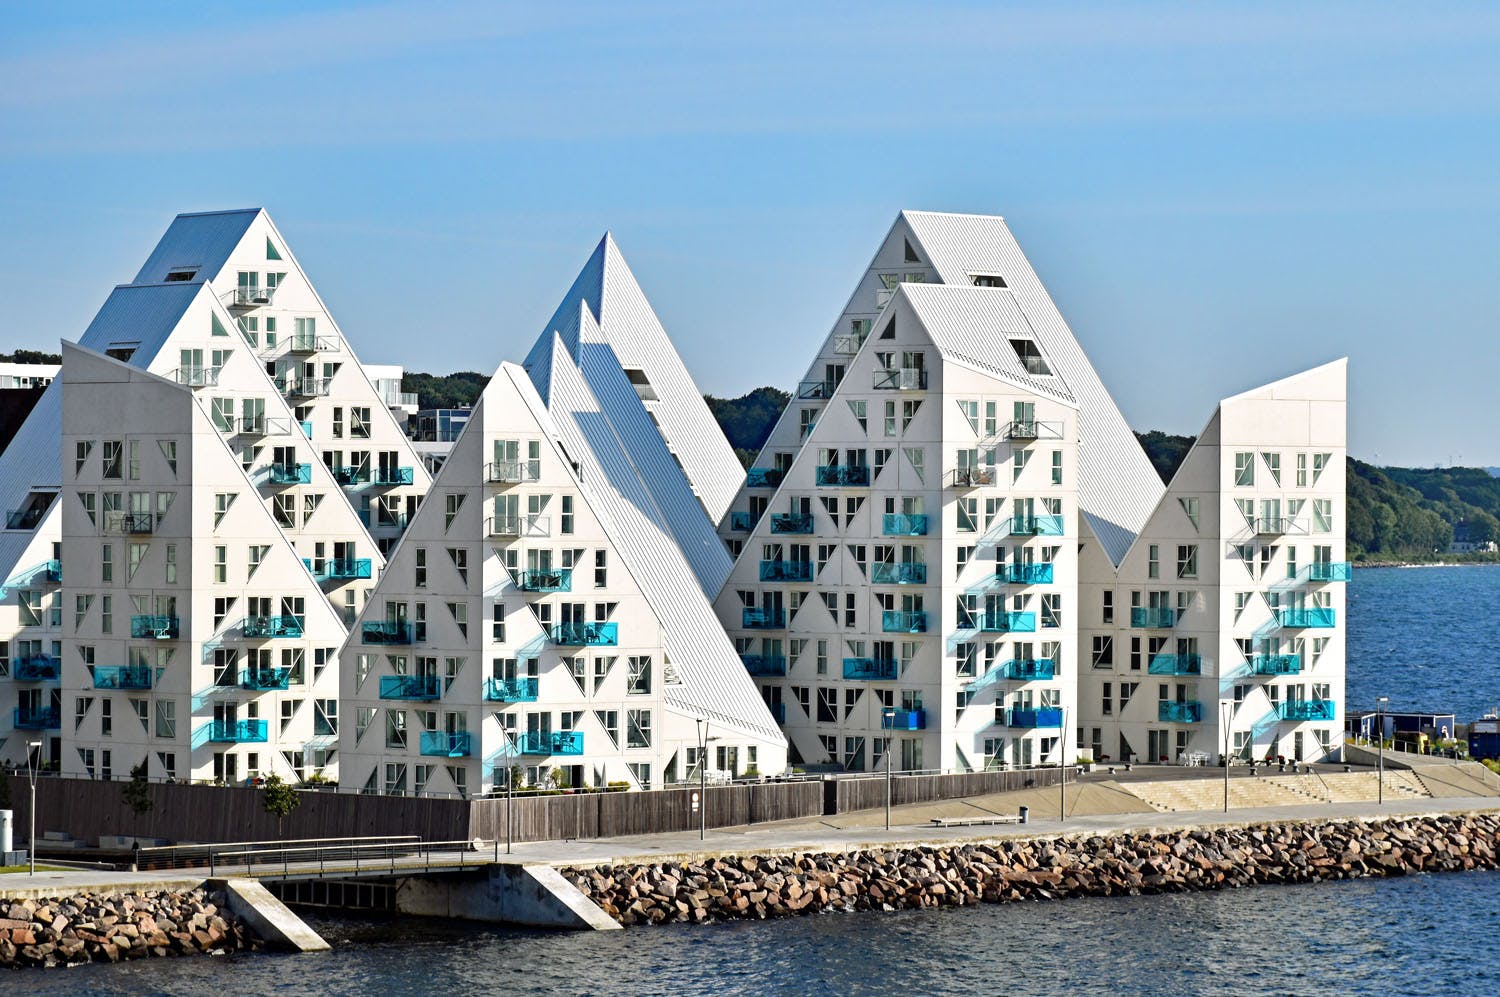 Aarhus - Modern residential Isbjerget